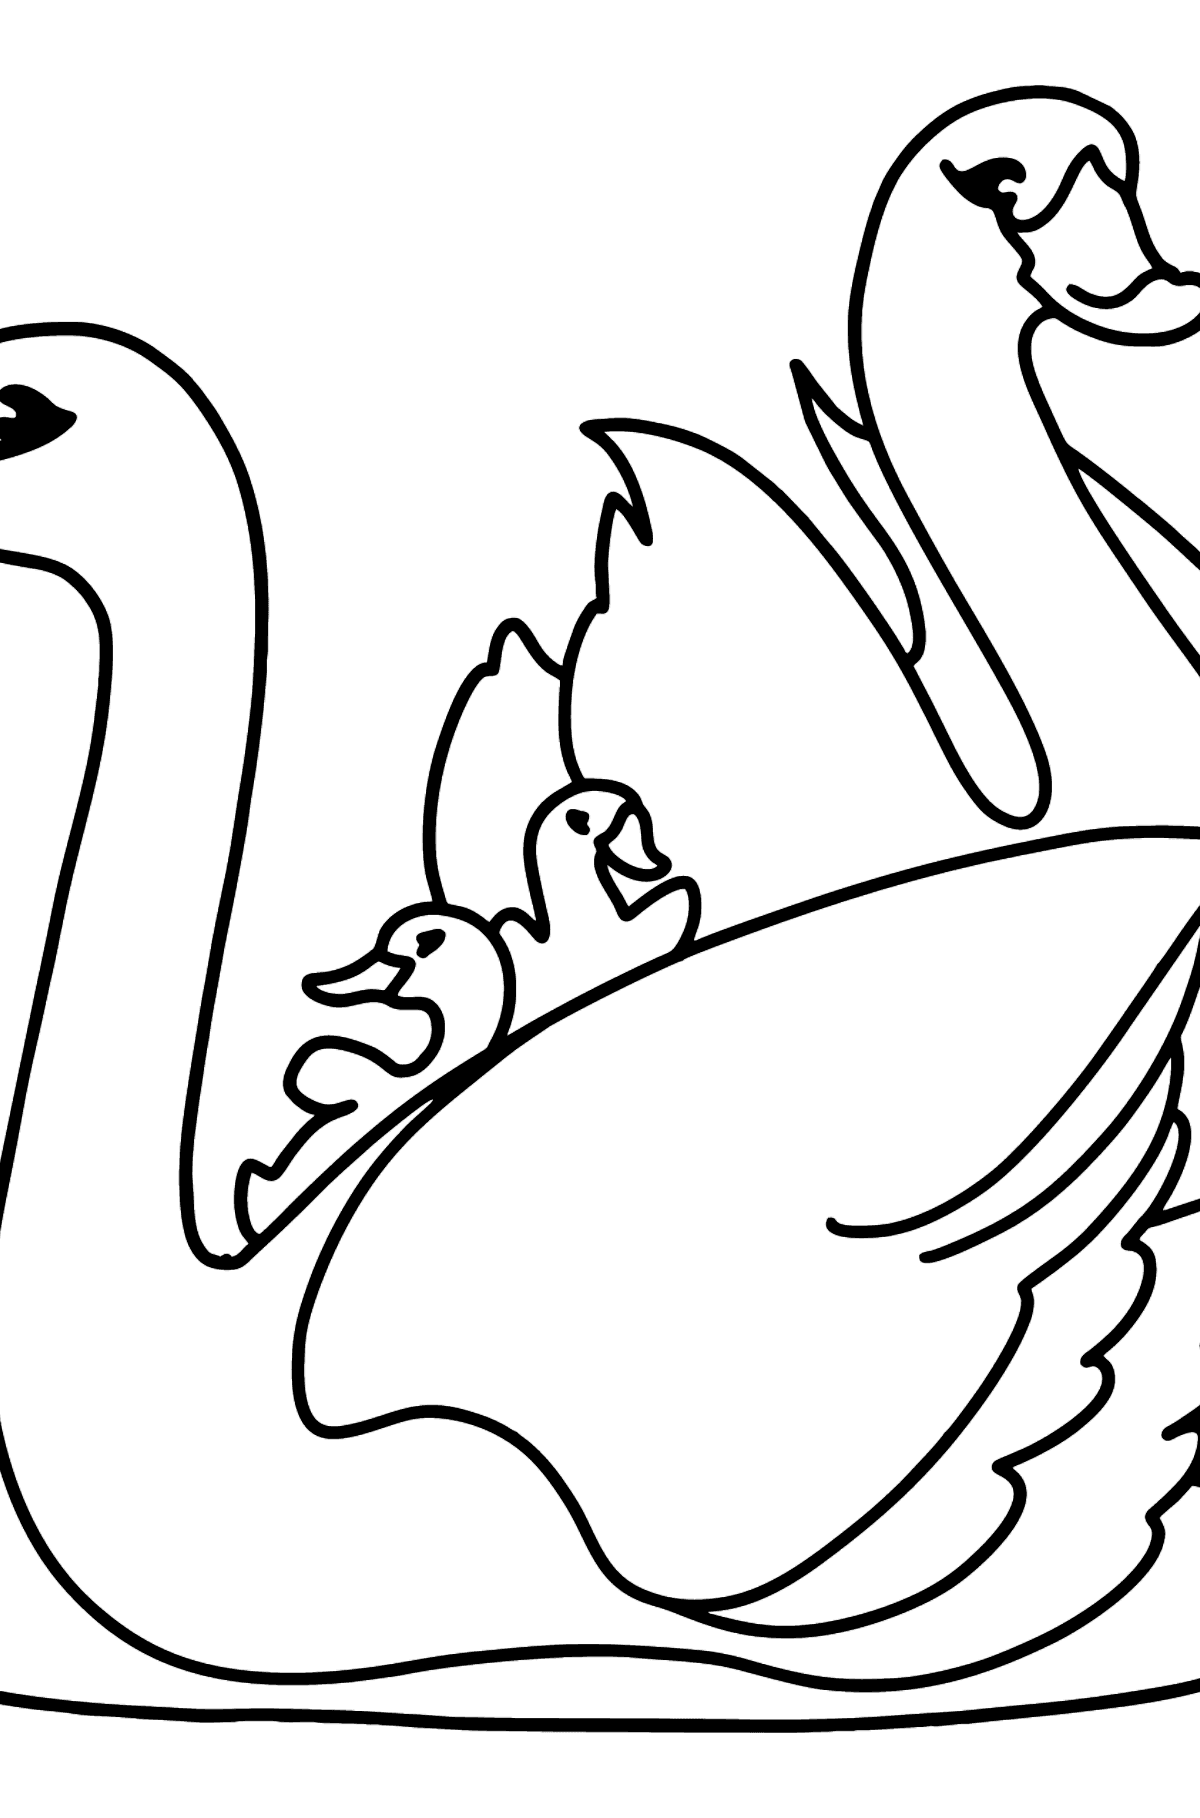 Hvide svaner tegning til farvning - Tegninger til farvelægning for børn